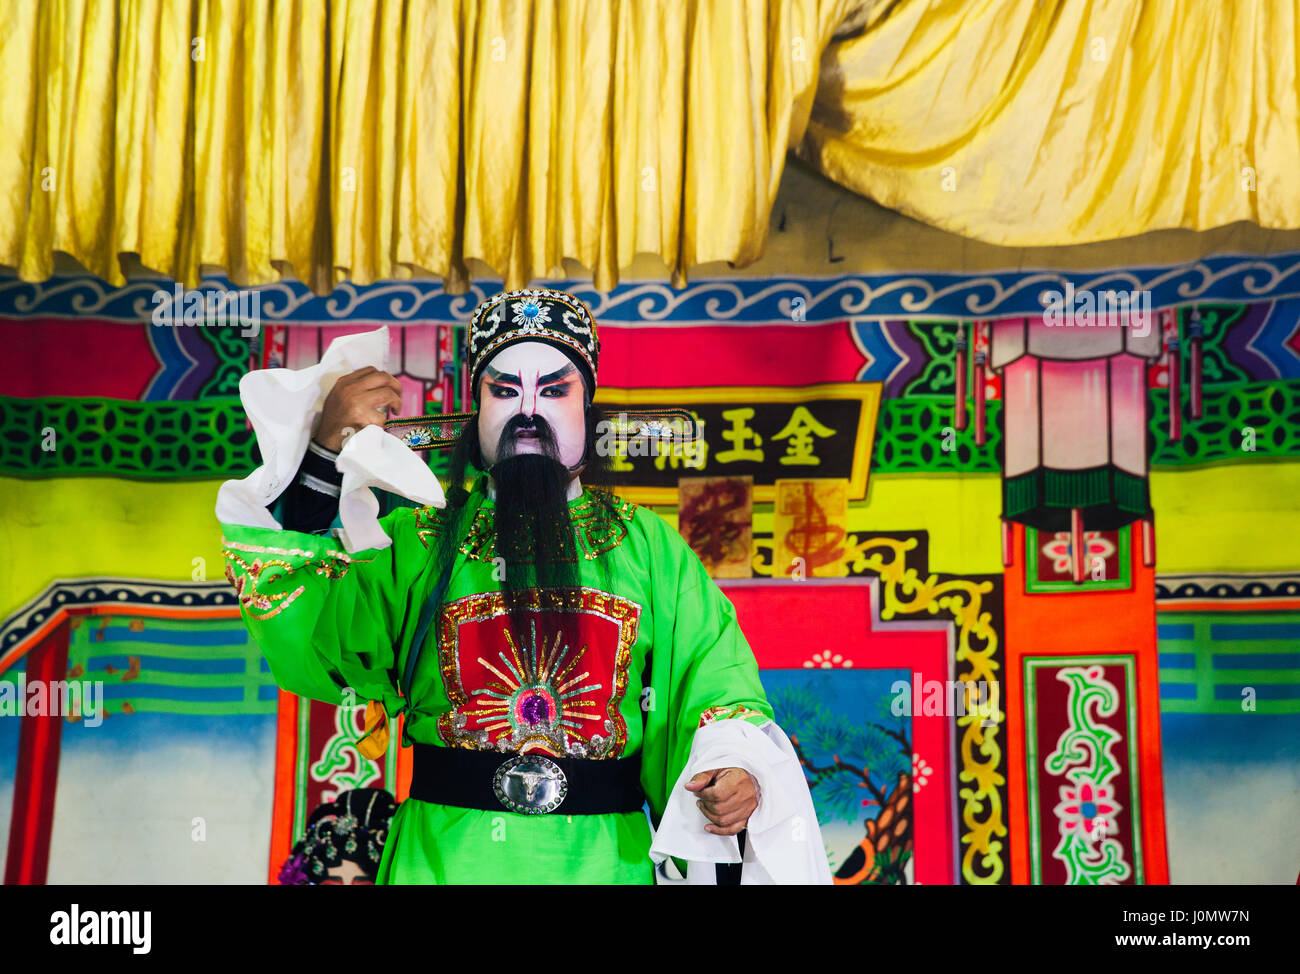 George Town, Malaysia - 26. März 2016: Schauspieler spielen traditionelle chinesische Oper auf das Straßenbild, George Town, Penang, Malaysia am 26. März 2016. Stockfoto